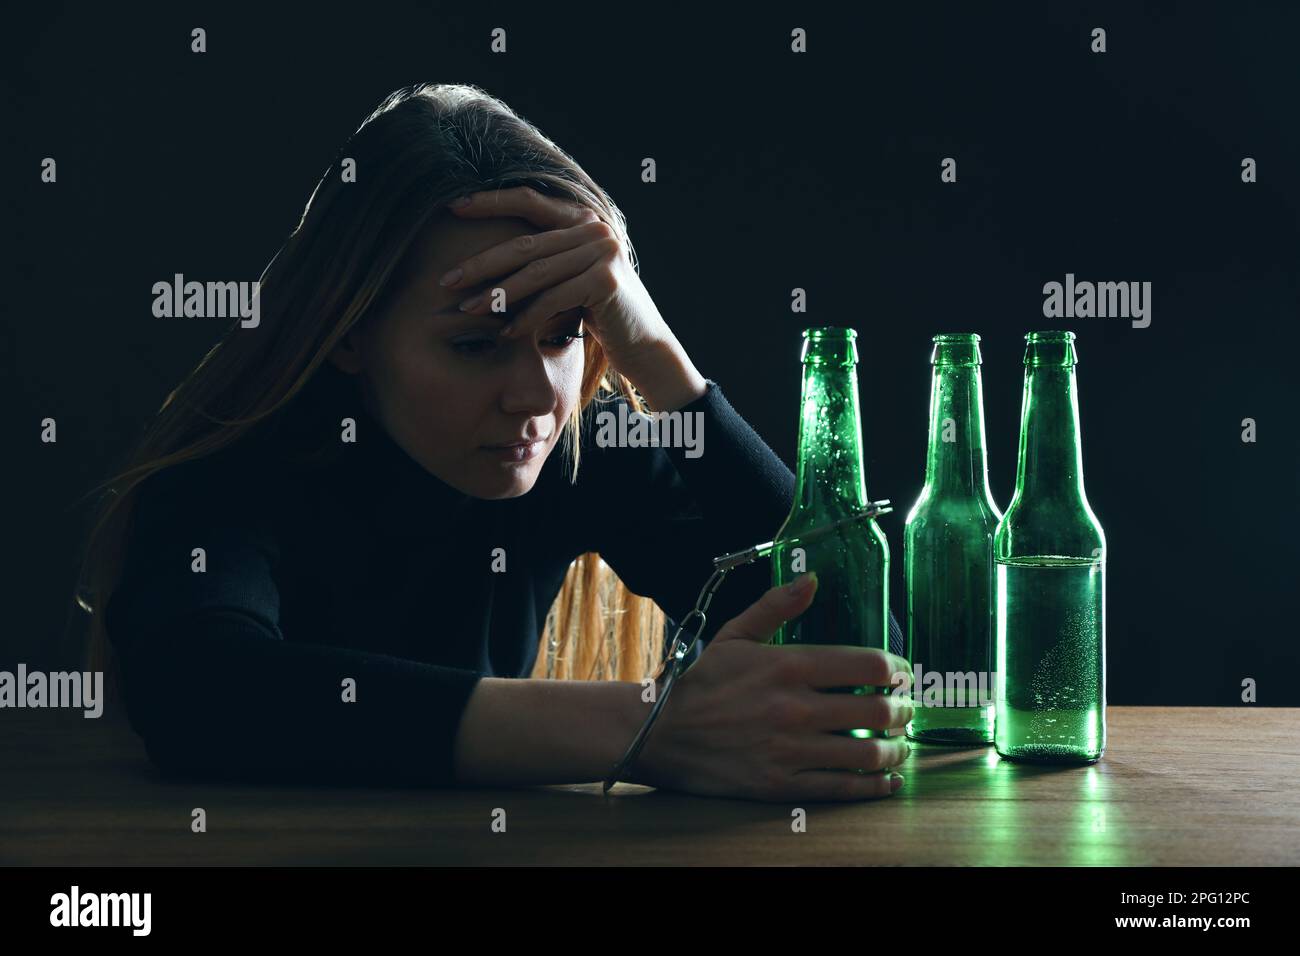 Dépendance à l'alcool. Femme menottée à une bouteille de bière à une table en bois sur fond noir Banque D'Images